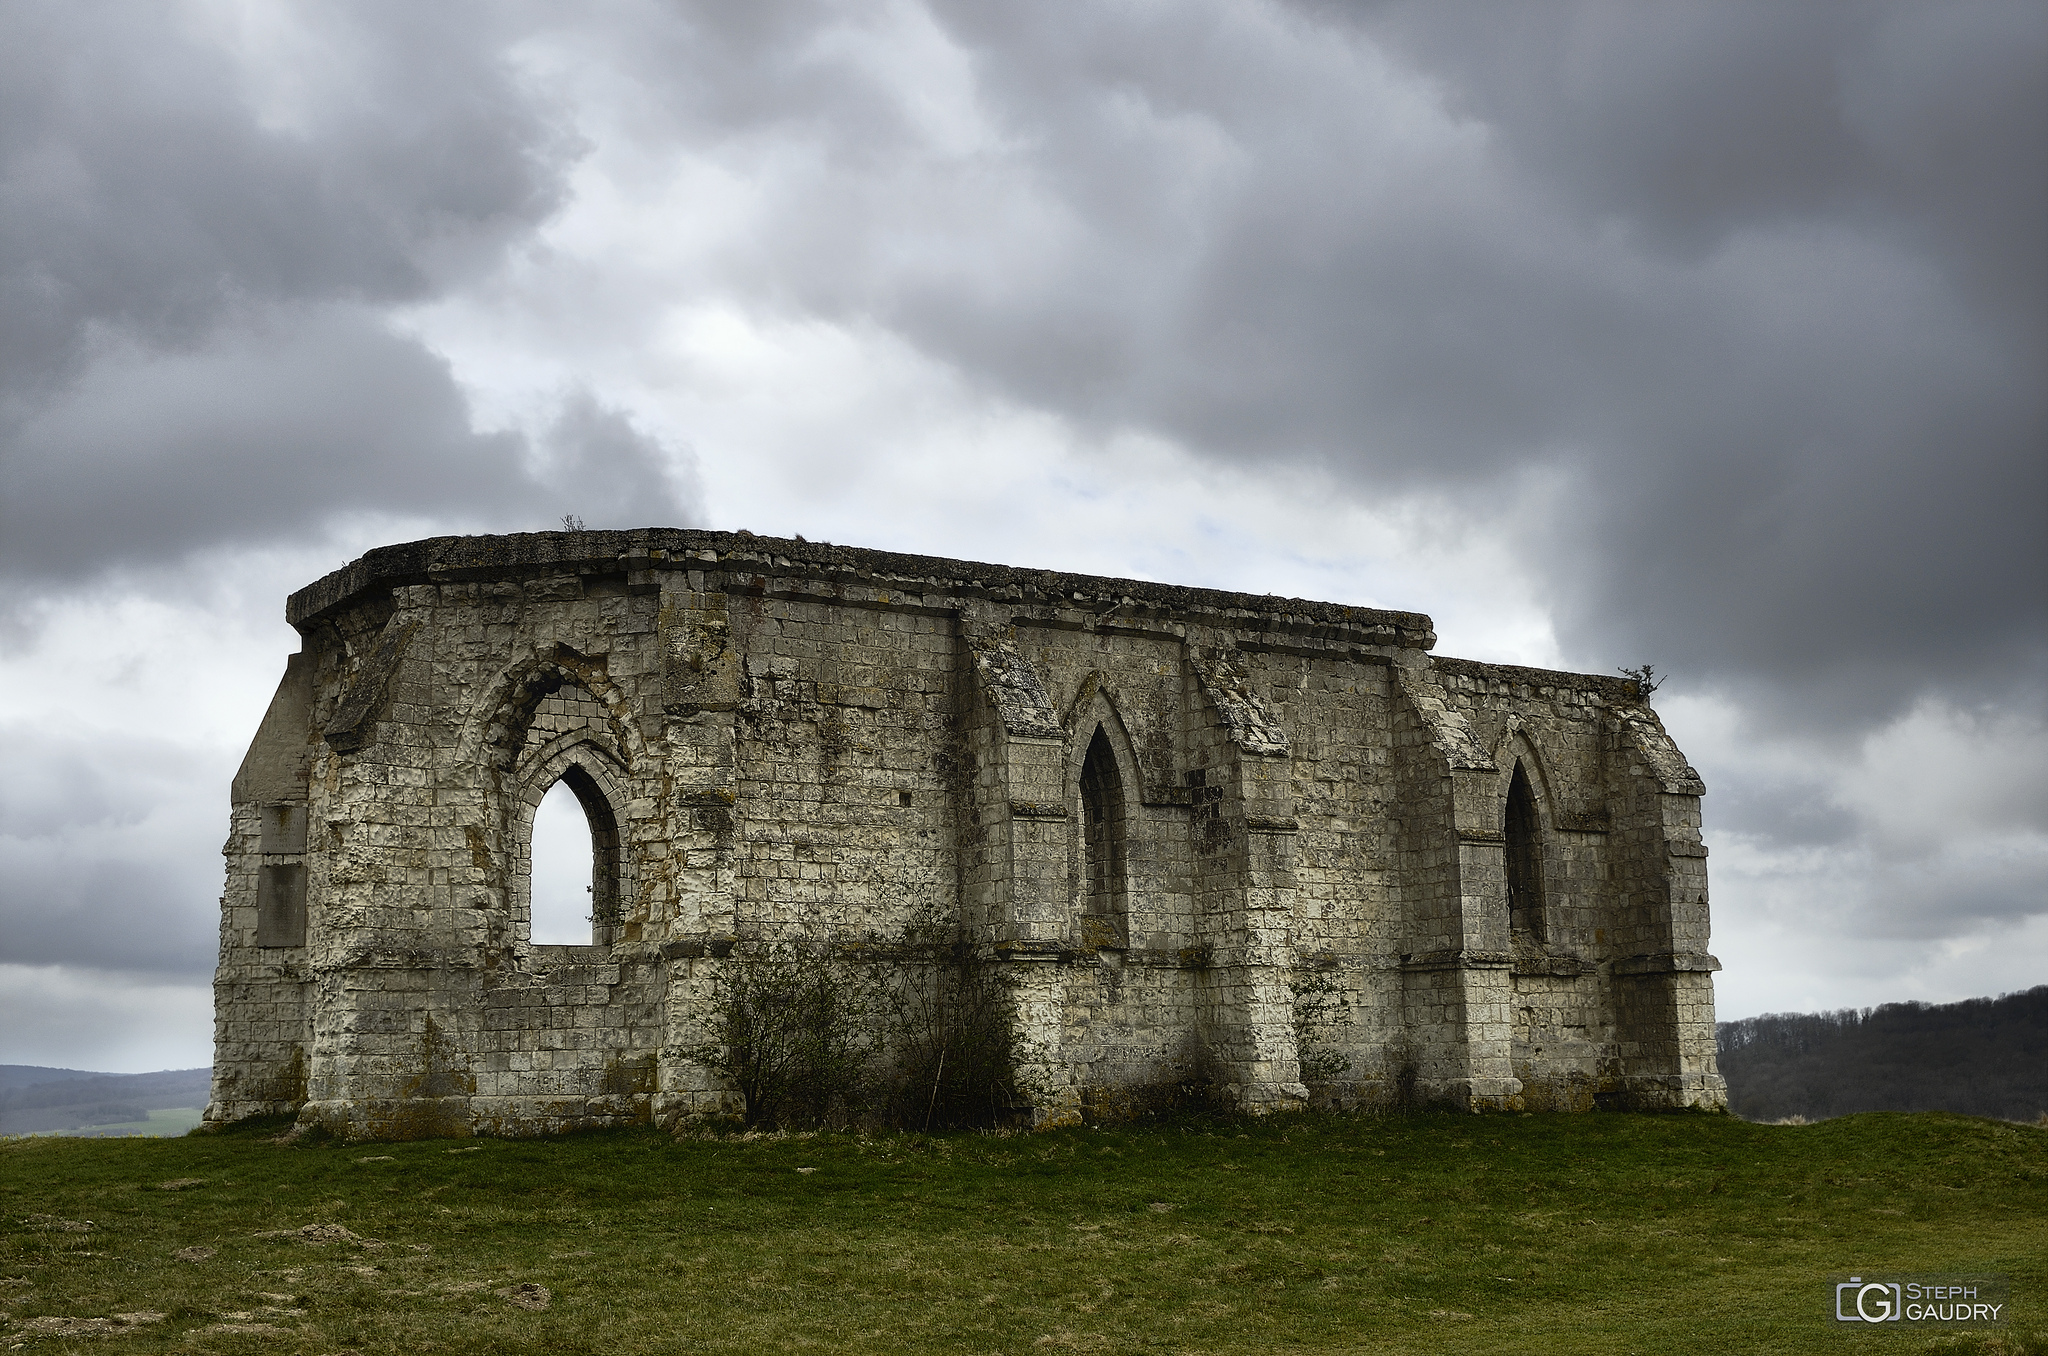 The ruins of the 13th century chapel of Saint Louis at Guémy [Klicken Sie hier, um die Diashow zu starten]